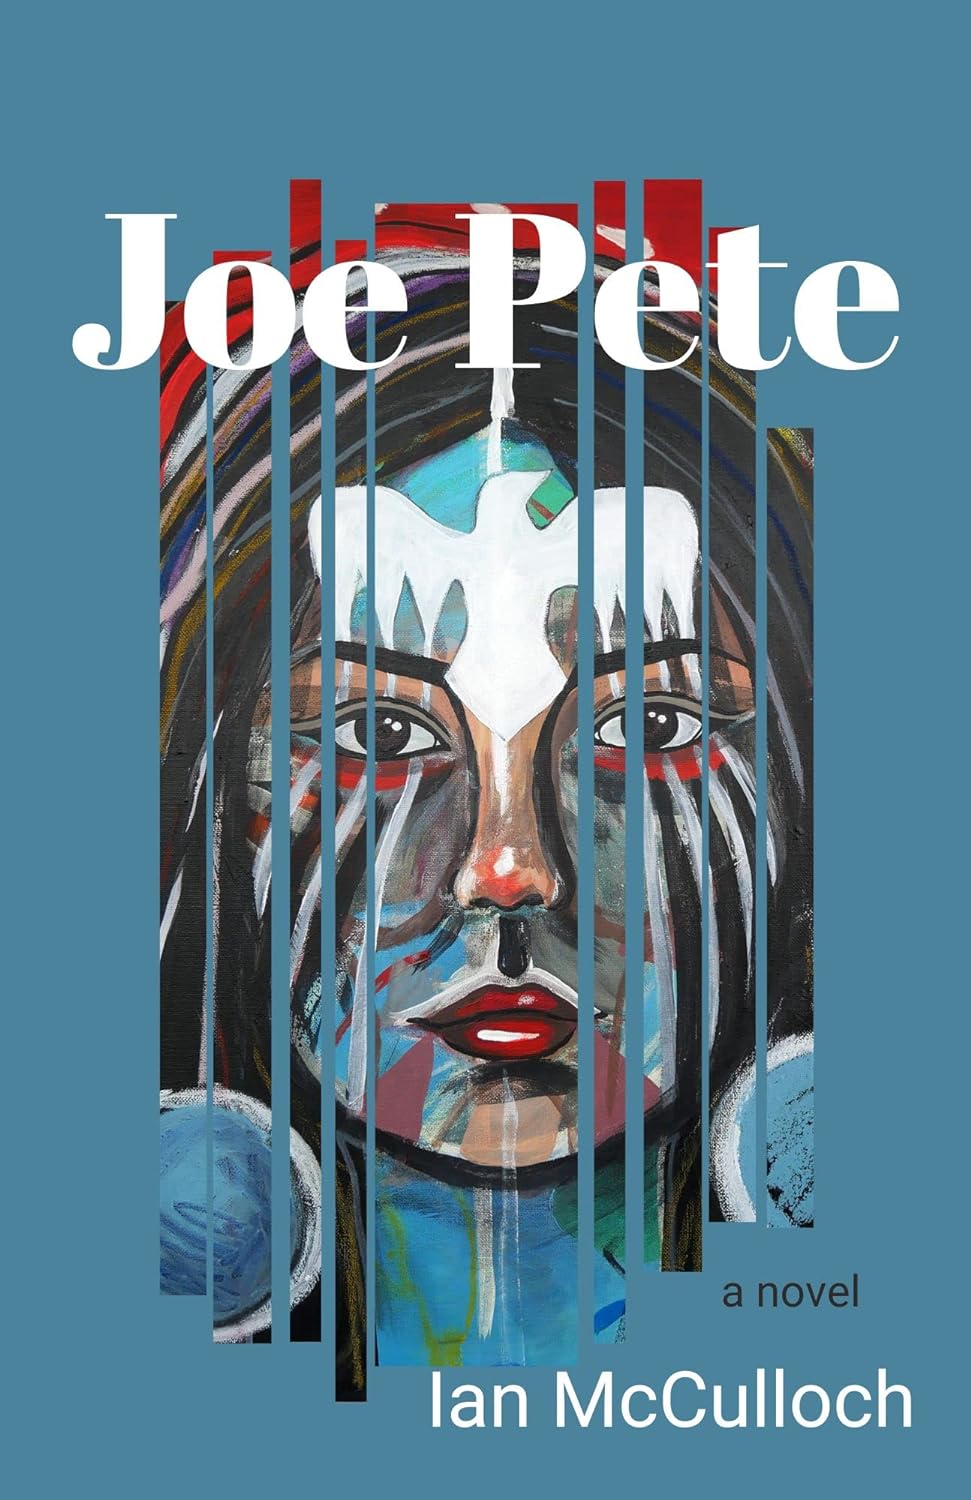 Joe Pete by Ian McCulloch